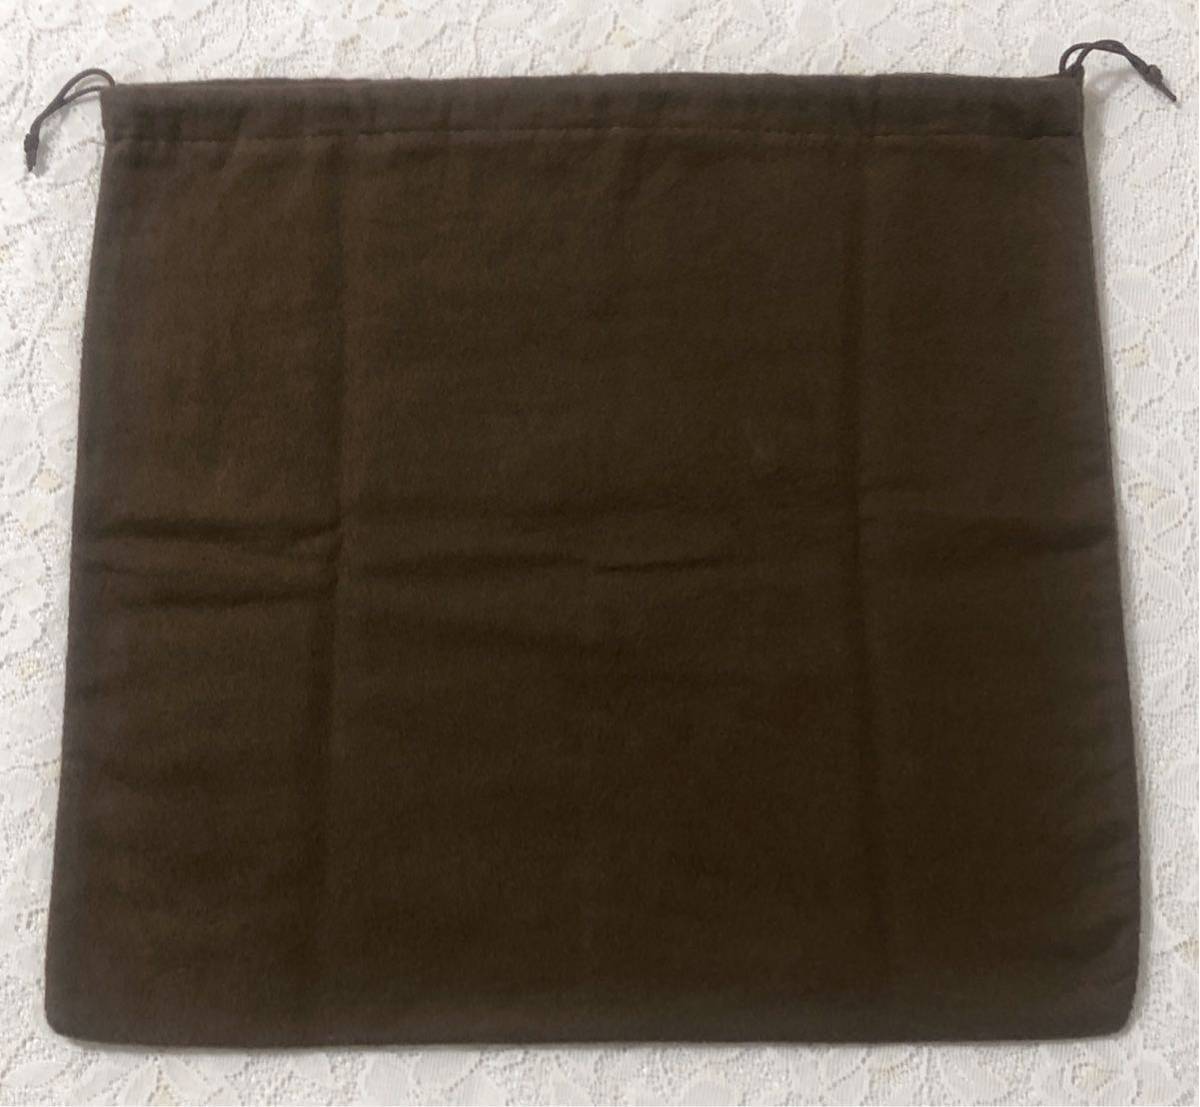 ゴヤール「GOYARD」バッグ保存袋 (3363) 正規品 付属品 内袋 布袋 巾着袋 布製 起毛生地 ブラウン 35×34cm 小さめ_画像2